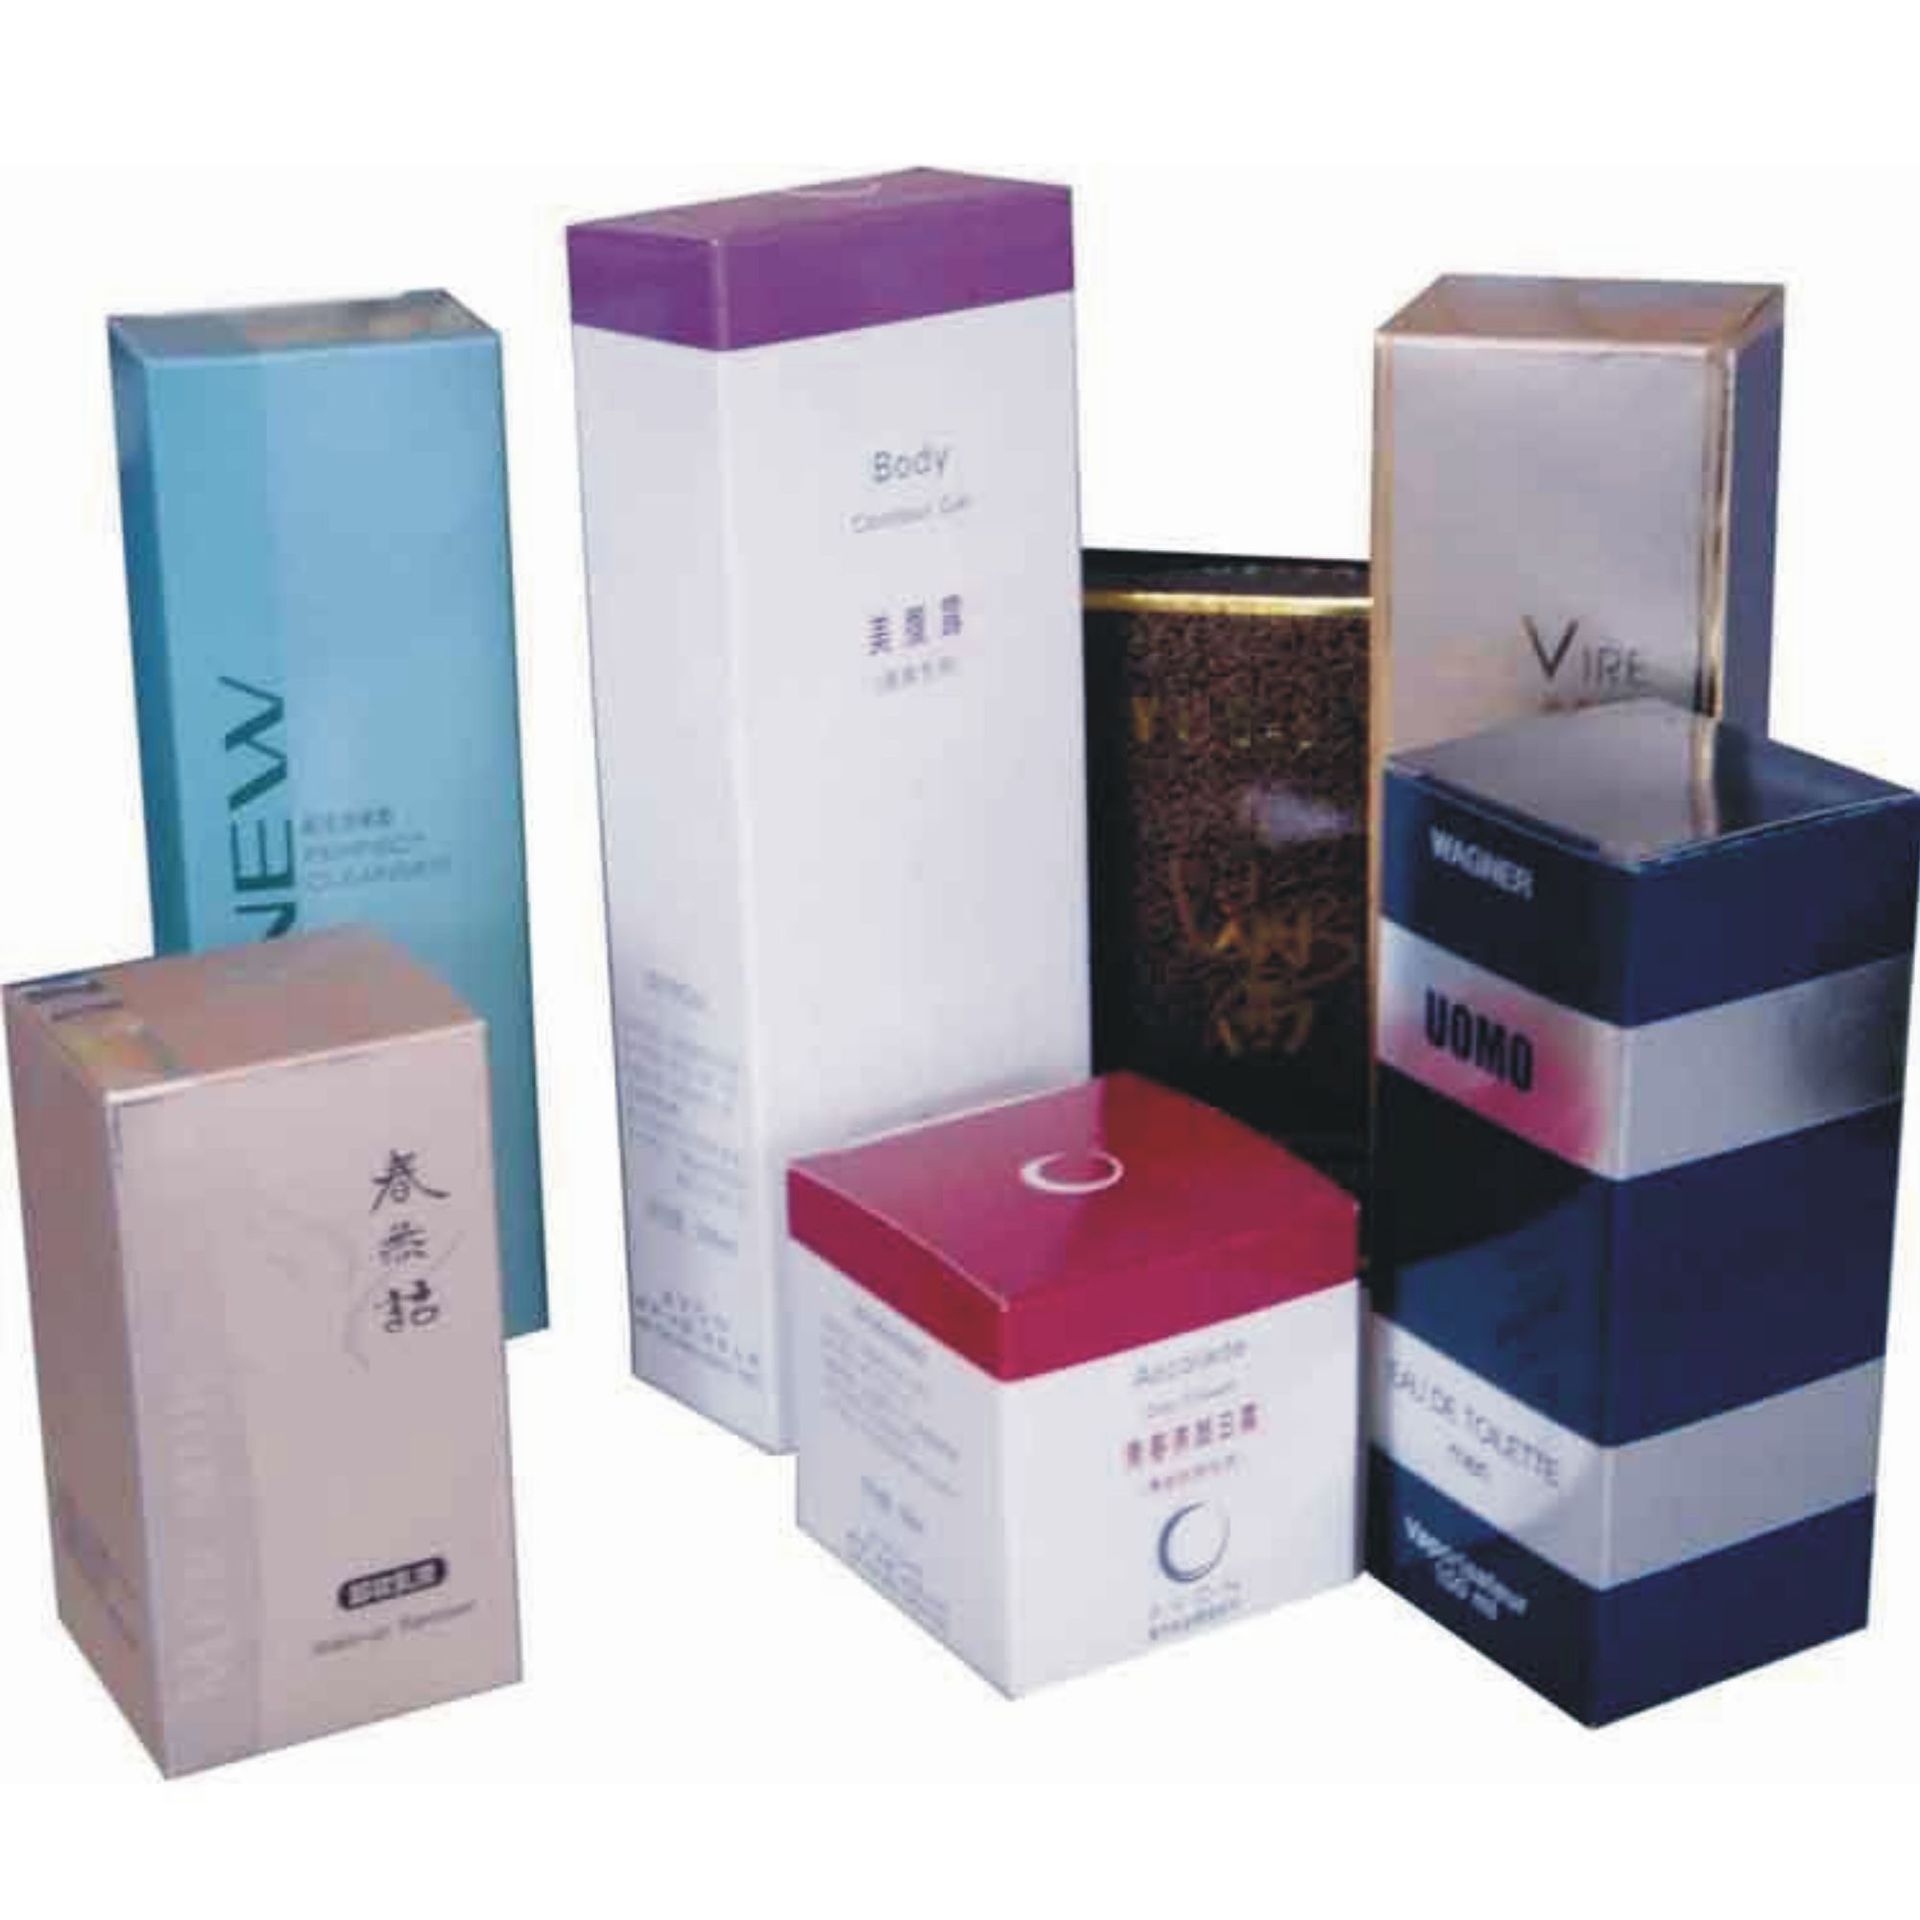 杭州市牛皮纸食品茶叶包装盒化妆品纸盒厂家